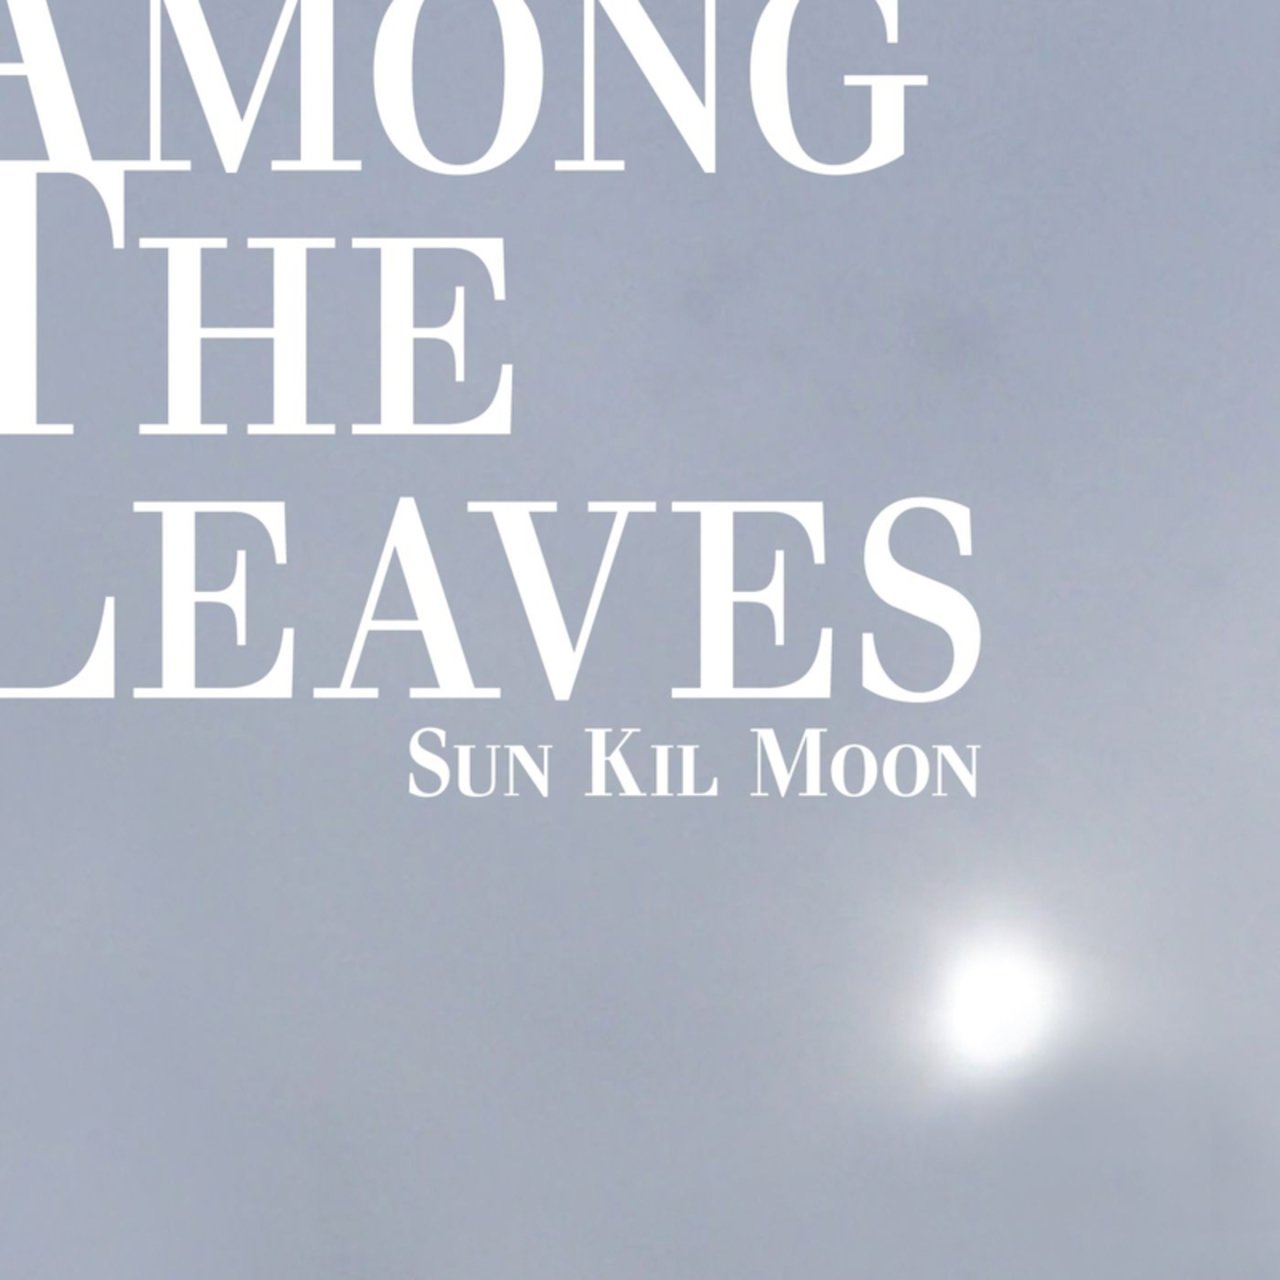 among-the-leaves-sun-kil-moon